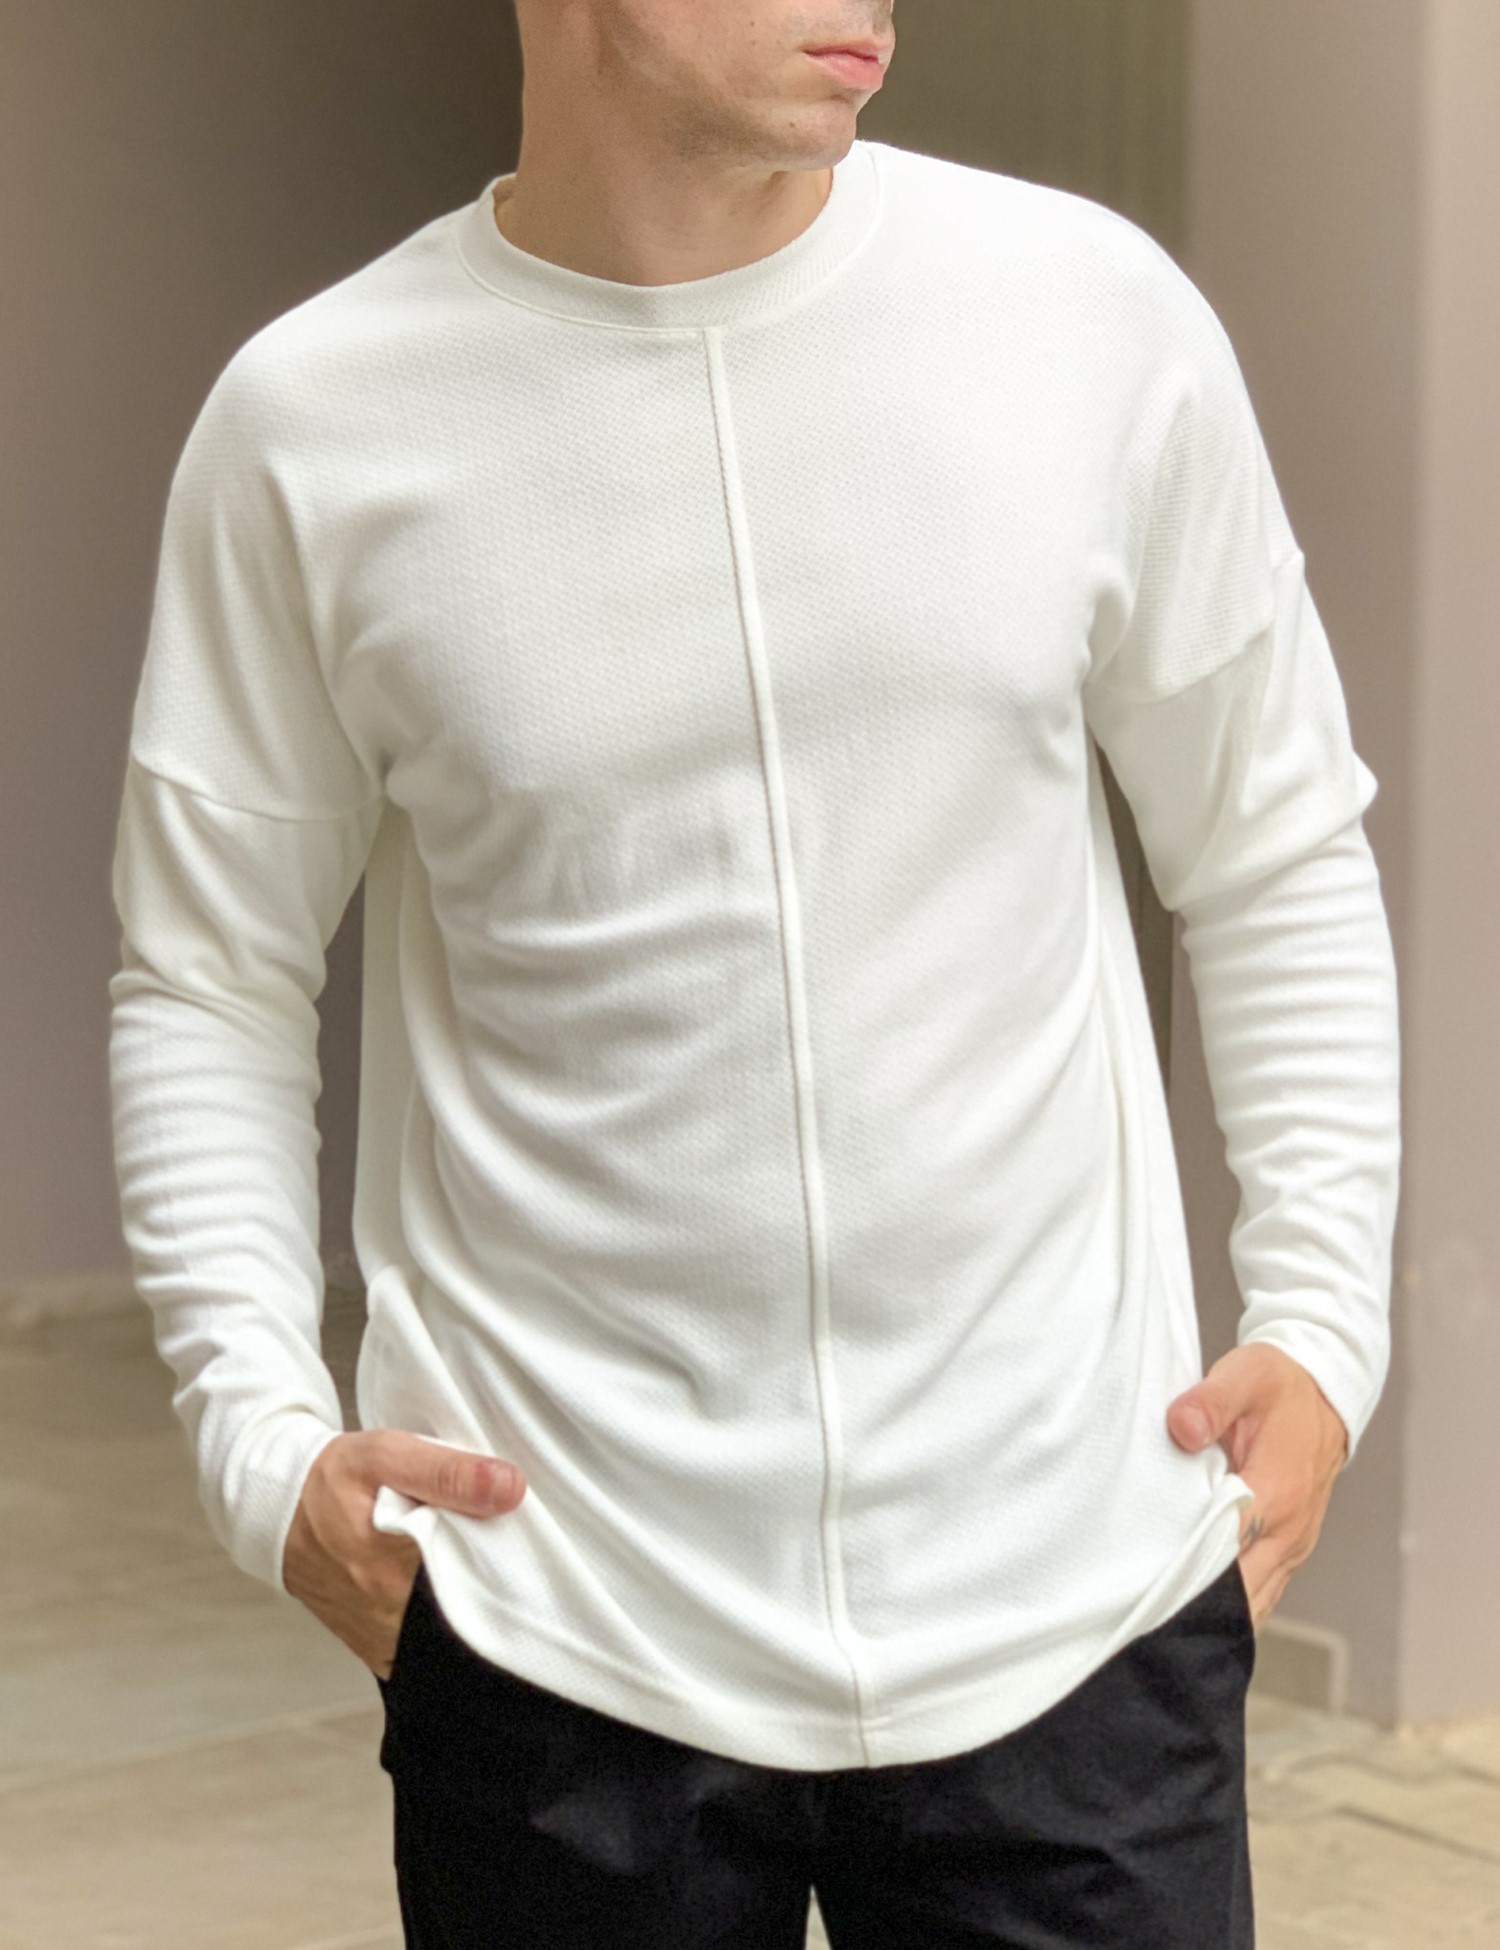 – Ανδρικη λευκη μακρυμανικη oversized μπλουζα με αναγλυφο υφασμα 1920W